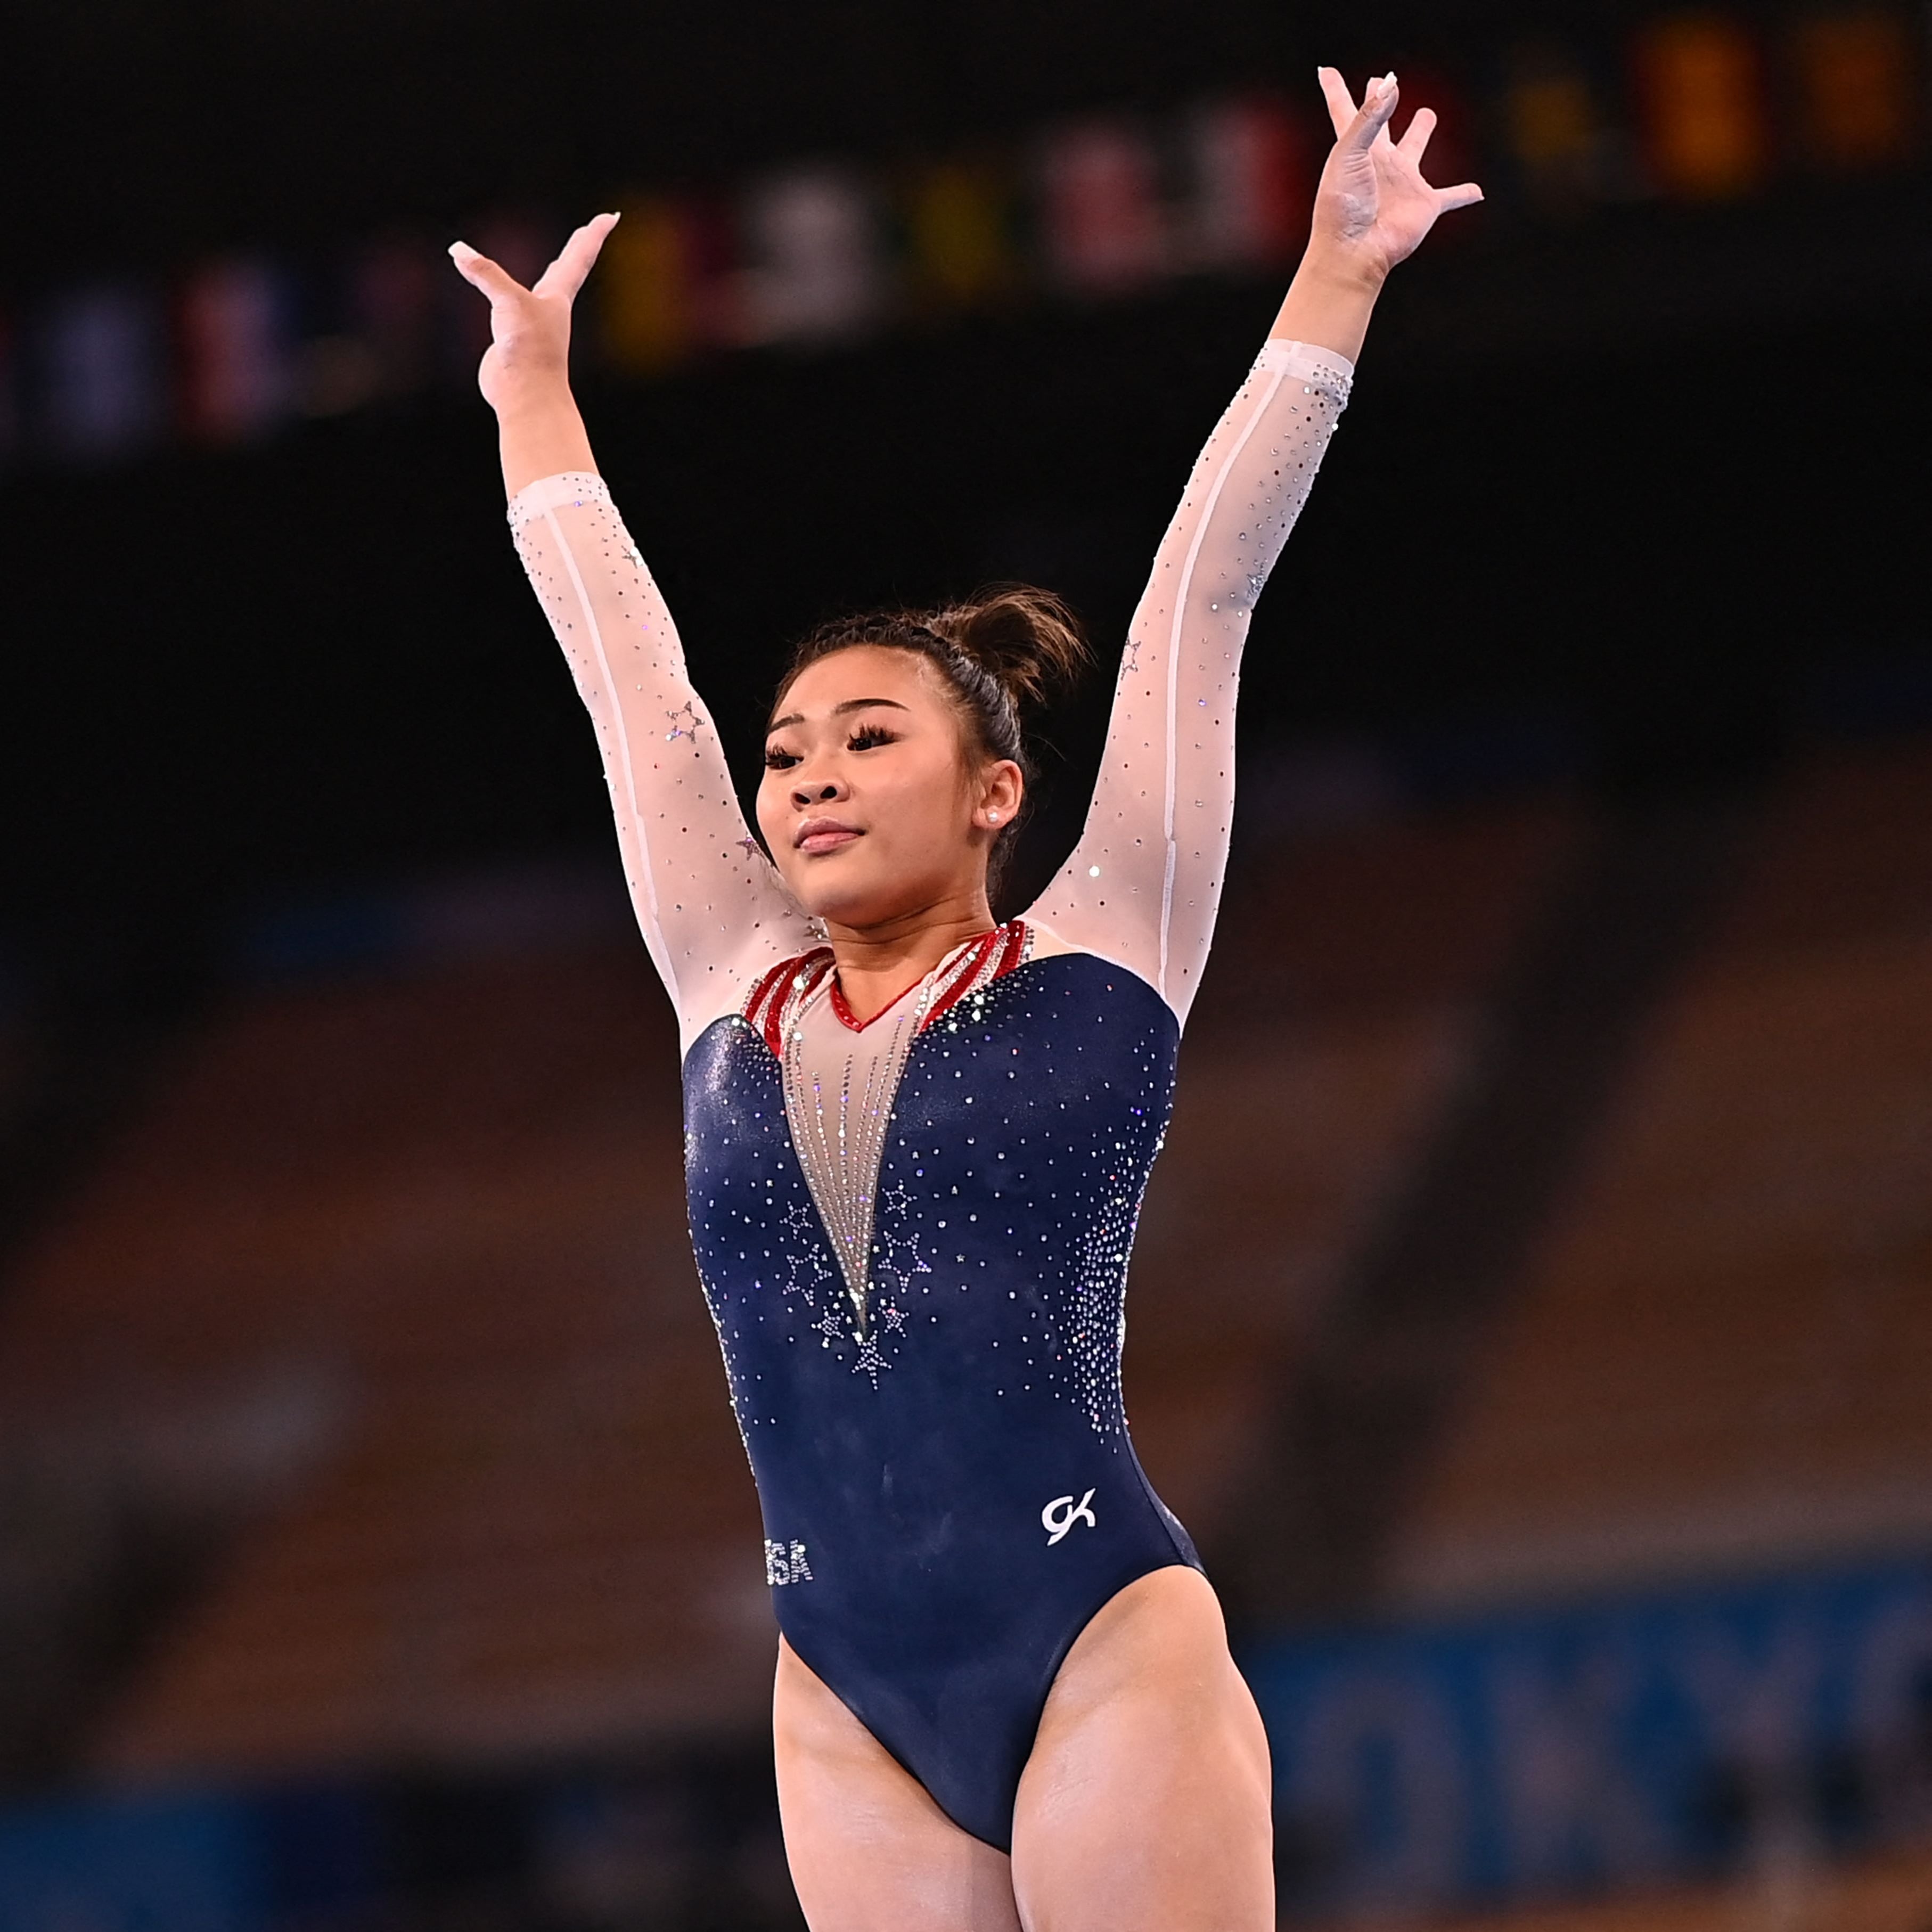 La gymnaste olympique Suni Lee partage son parcours en matière d’eczéma et de santé mentale